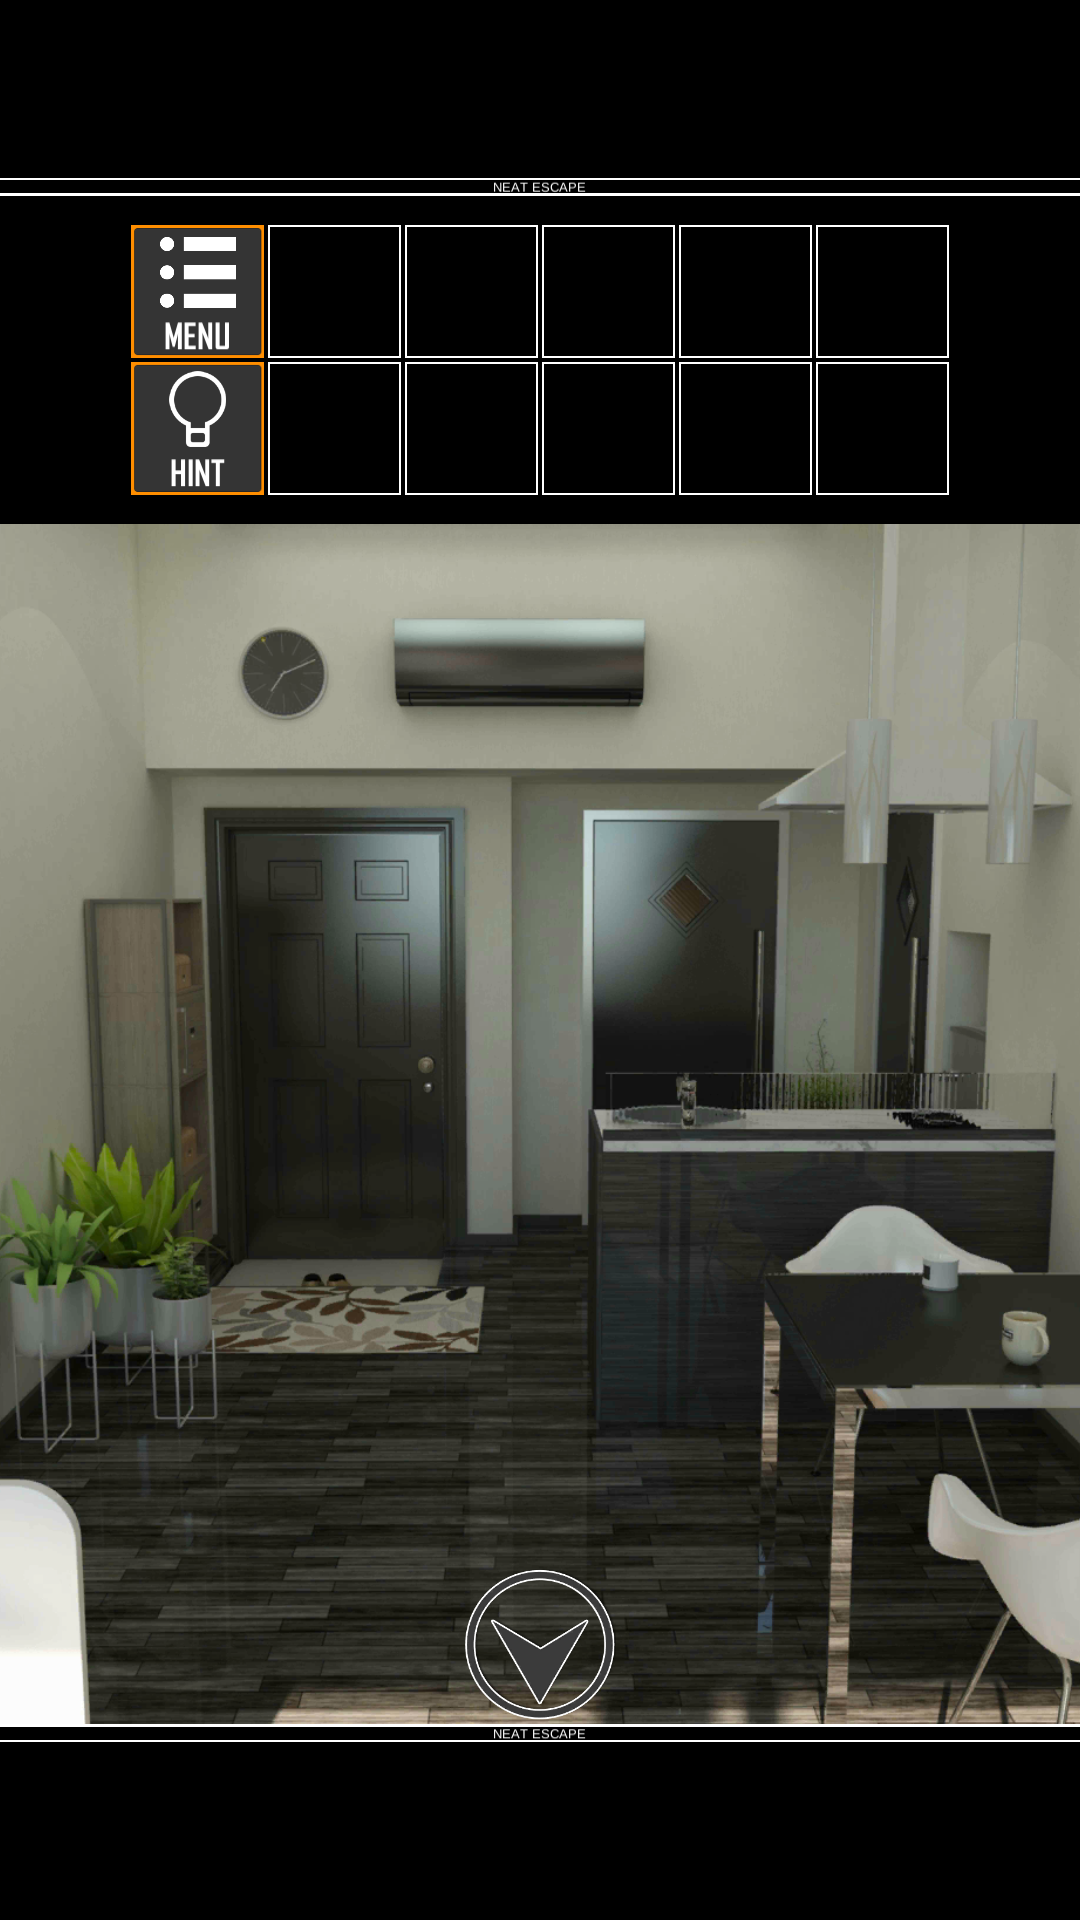 Screenshot 1 of Trò chơi trốn thoát: Chung cư 1.41